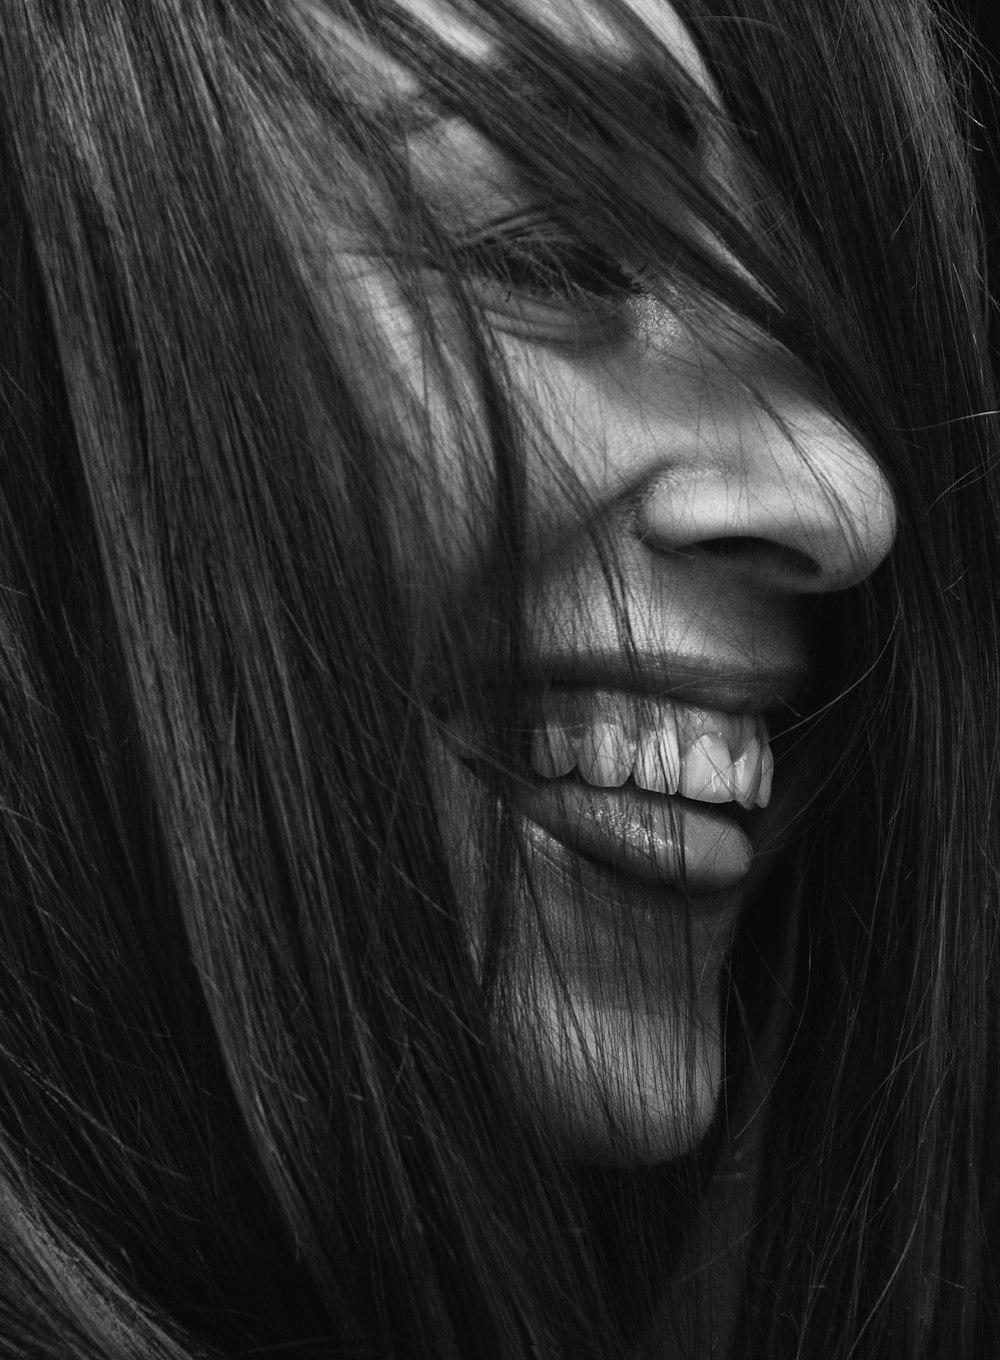 fotografia in scala di grigi di donna sorridente